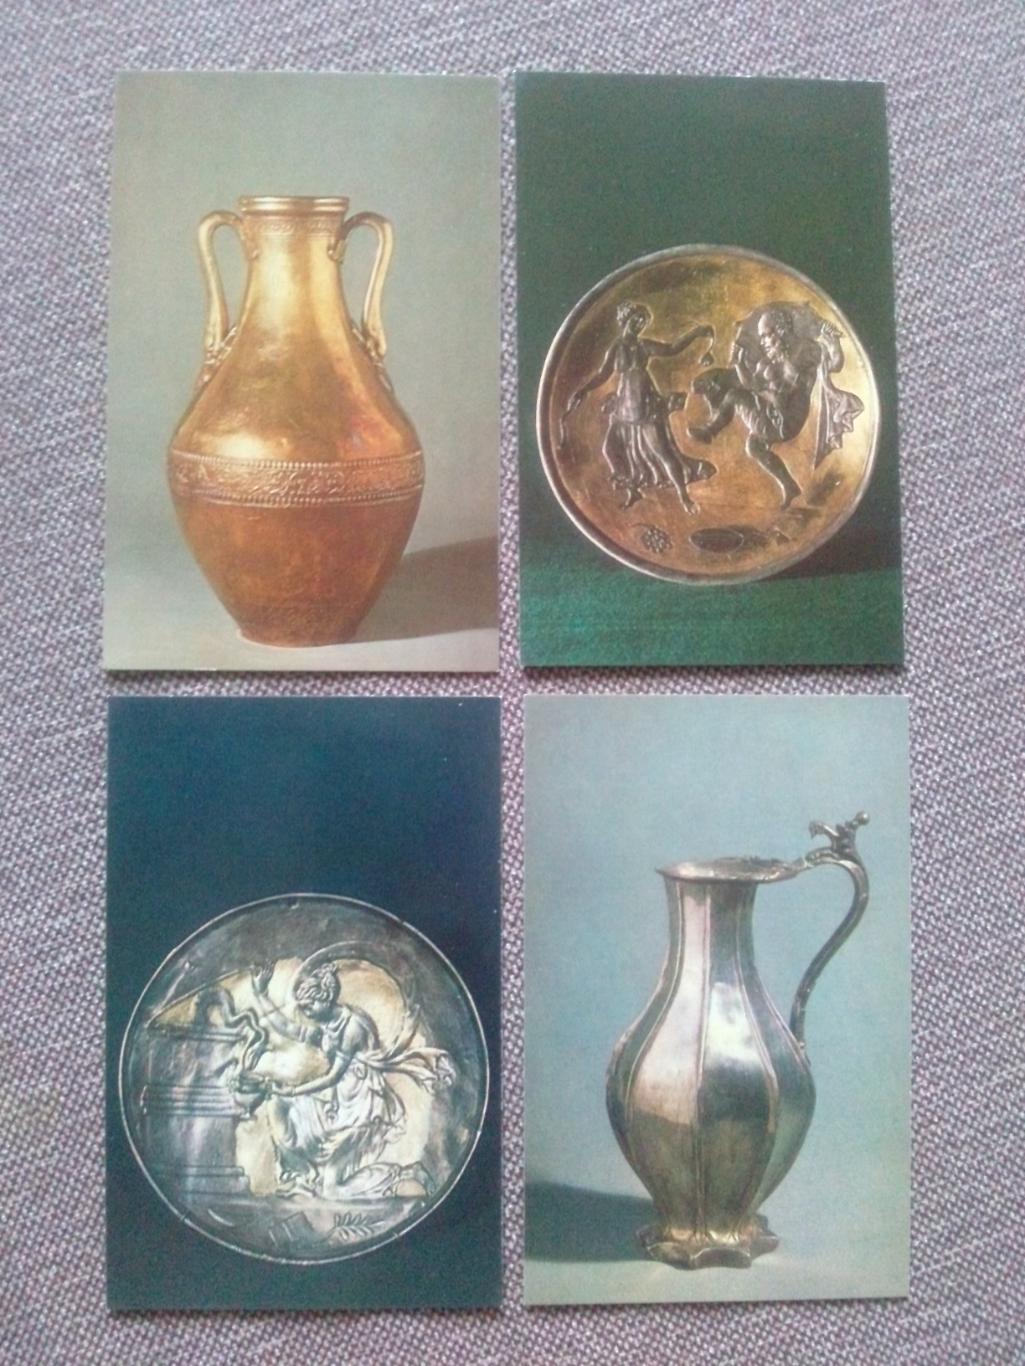 Византийское серебро в музеях СССР 1981 г. полный набор - 16 открыток (чистые) 4